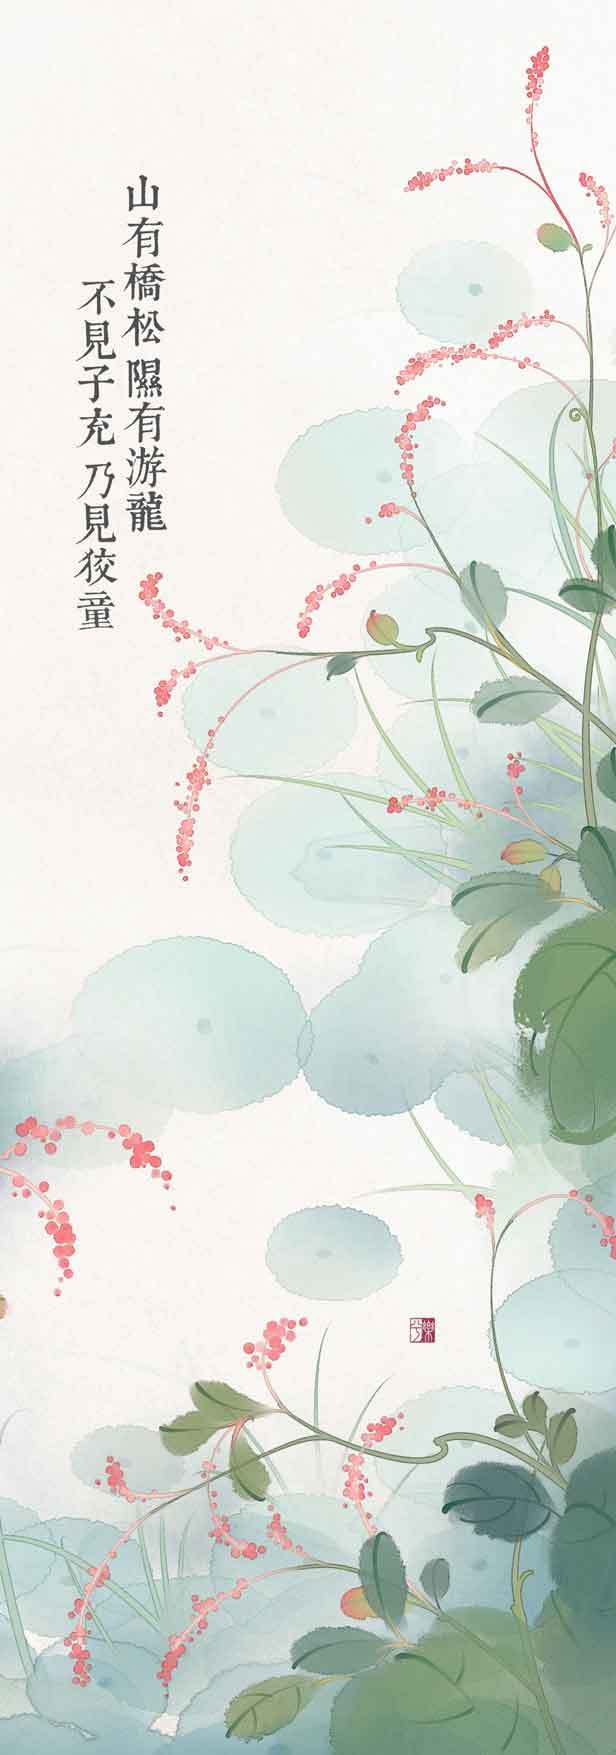 诗经中的植物-乐兮_诗经,植物,古风,水墨_涂鸦王国插画